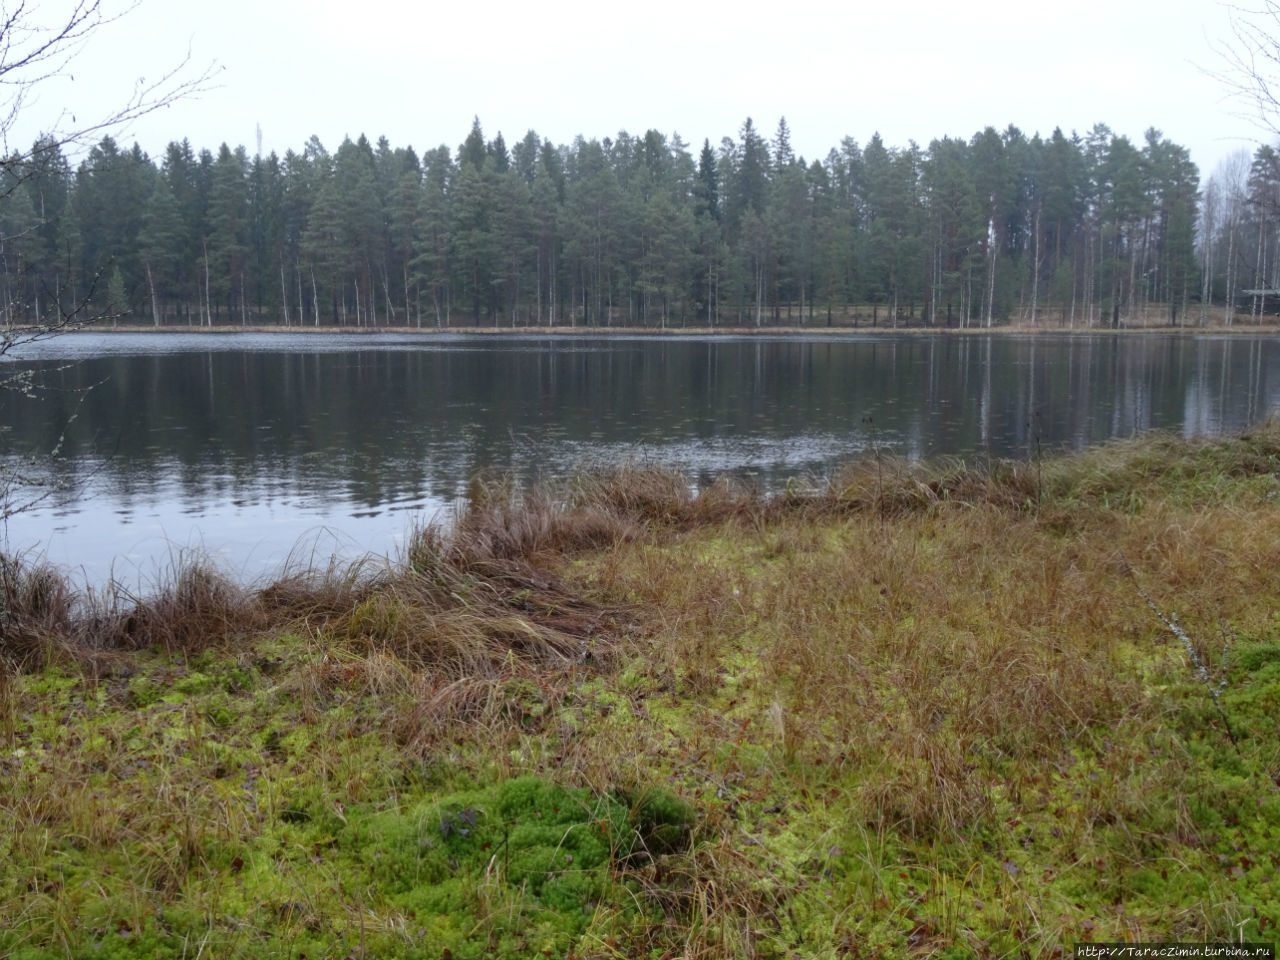 Эхтяри. В гости к хозяевам финского леса Эхтяри, Финляндия